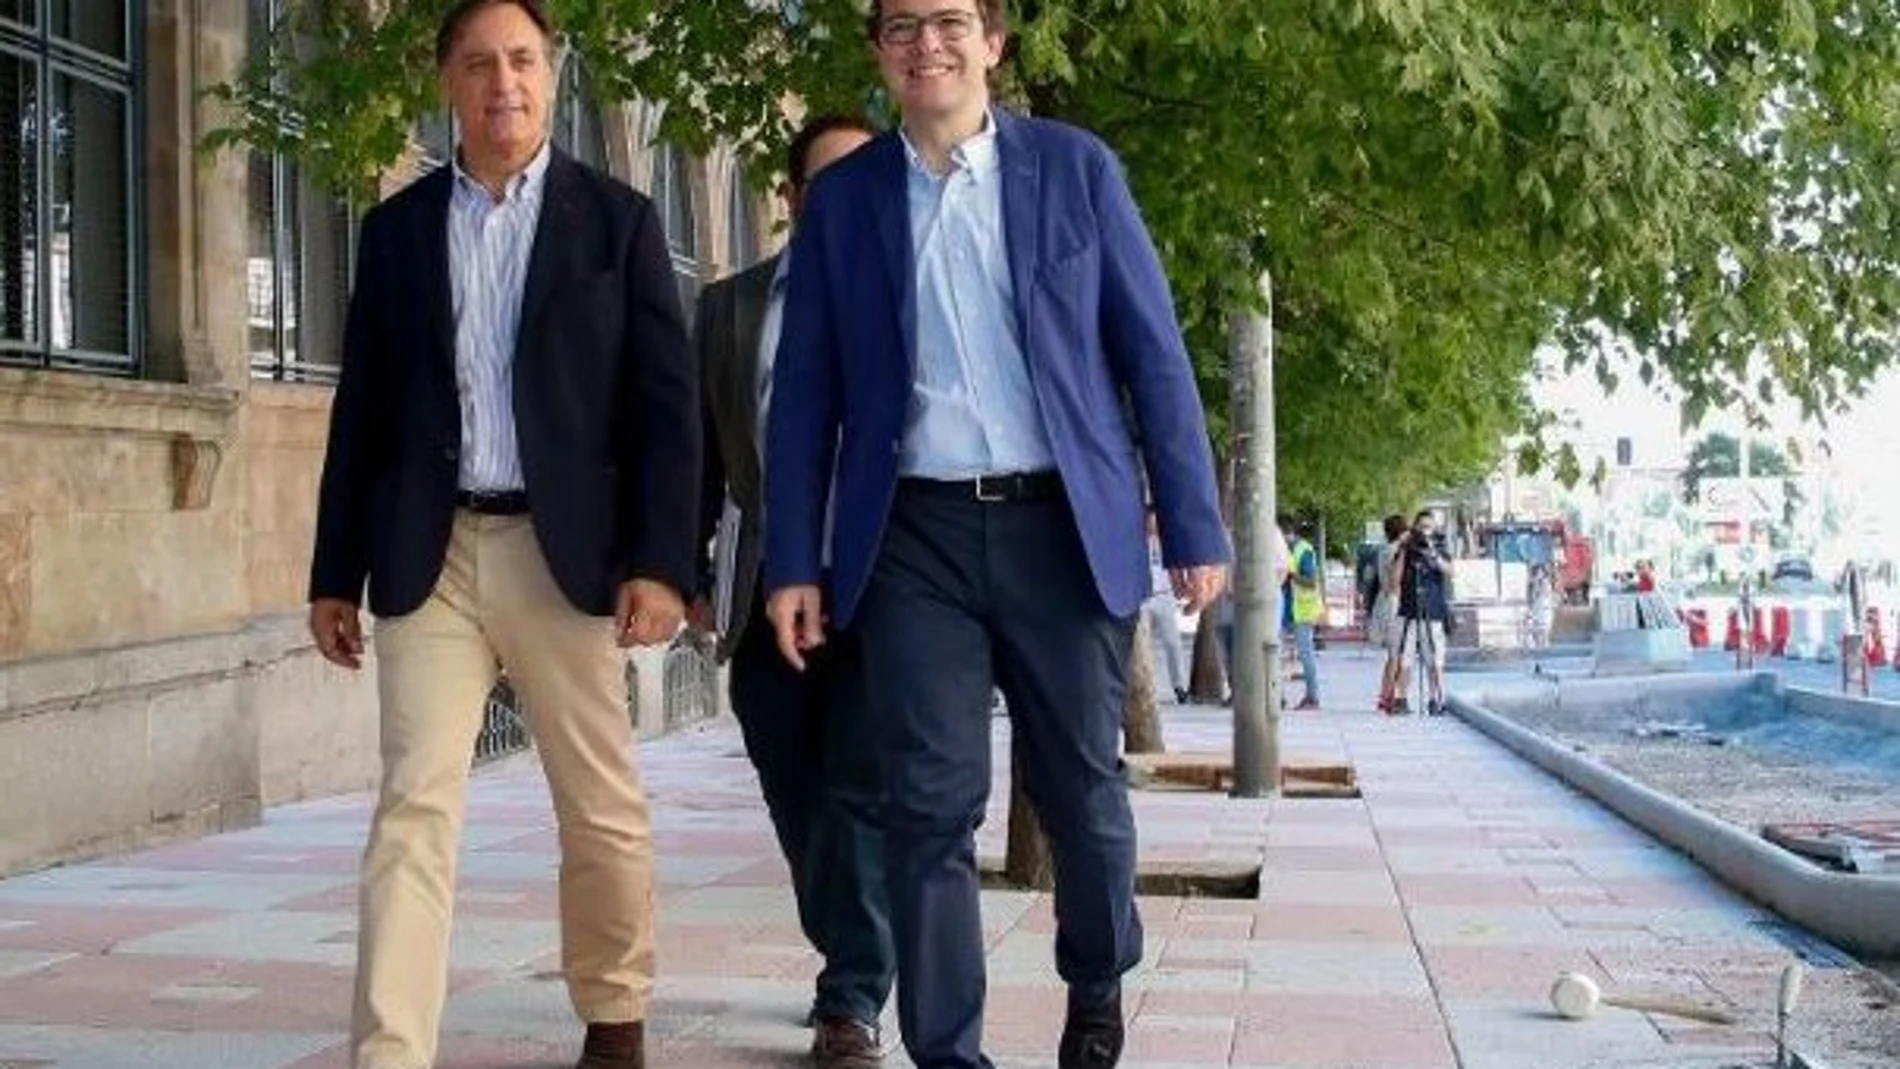 El presidente del Partido Popular de Castilla y León y alcalde de Salamanca, Alfonso Fernández Mañueco, visita las obras del Paseo de Canalejas, donde realizó el anuncio